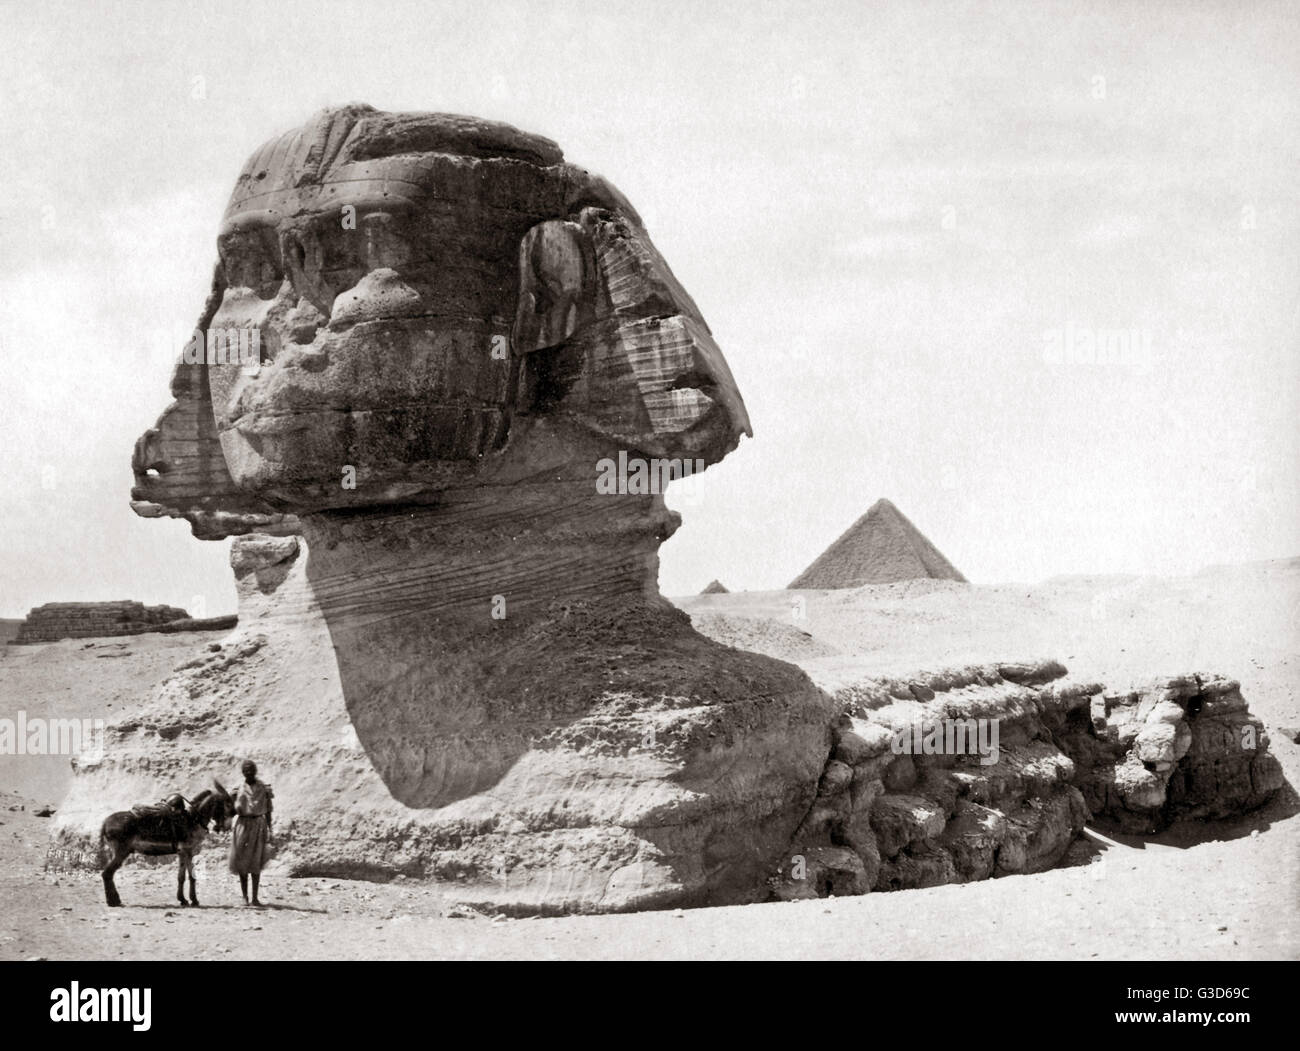 La Esfinge de Egipto, circa 1800. Fecha: circa 1800 Foto de stock